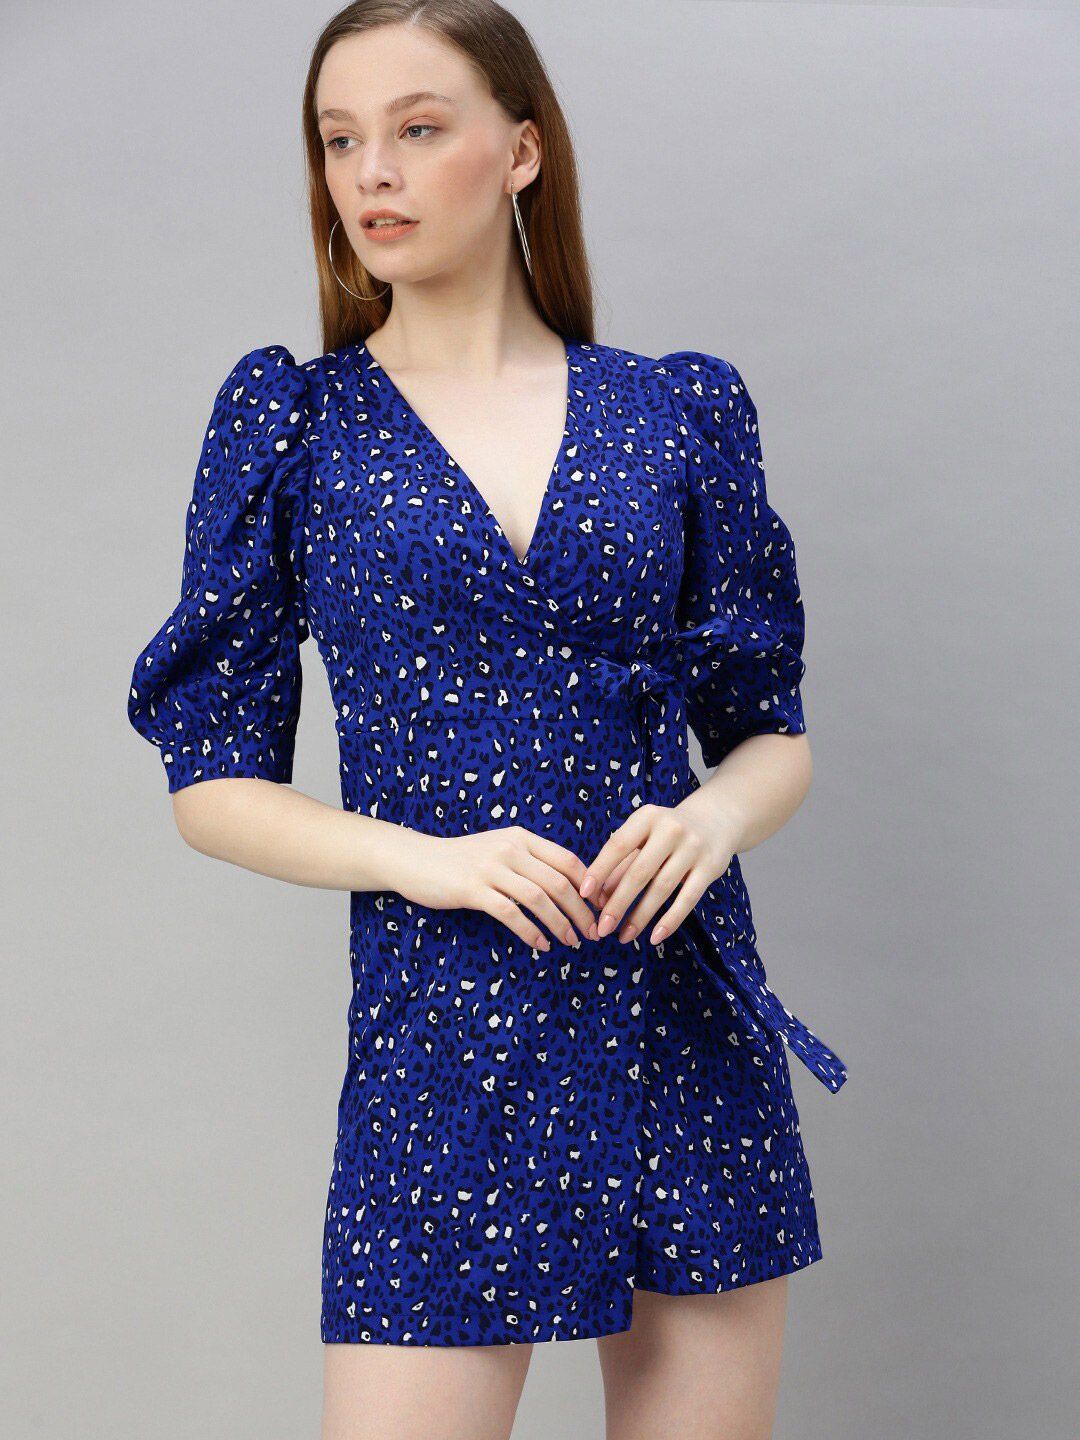 Sera Blue Polka Dot Print Puff Sleeve Crepe Dress Price in India